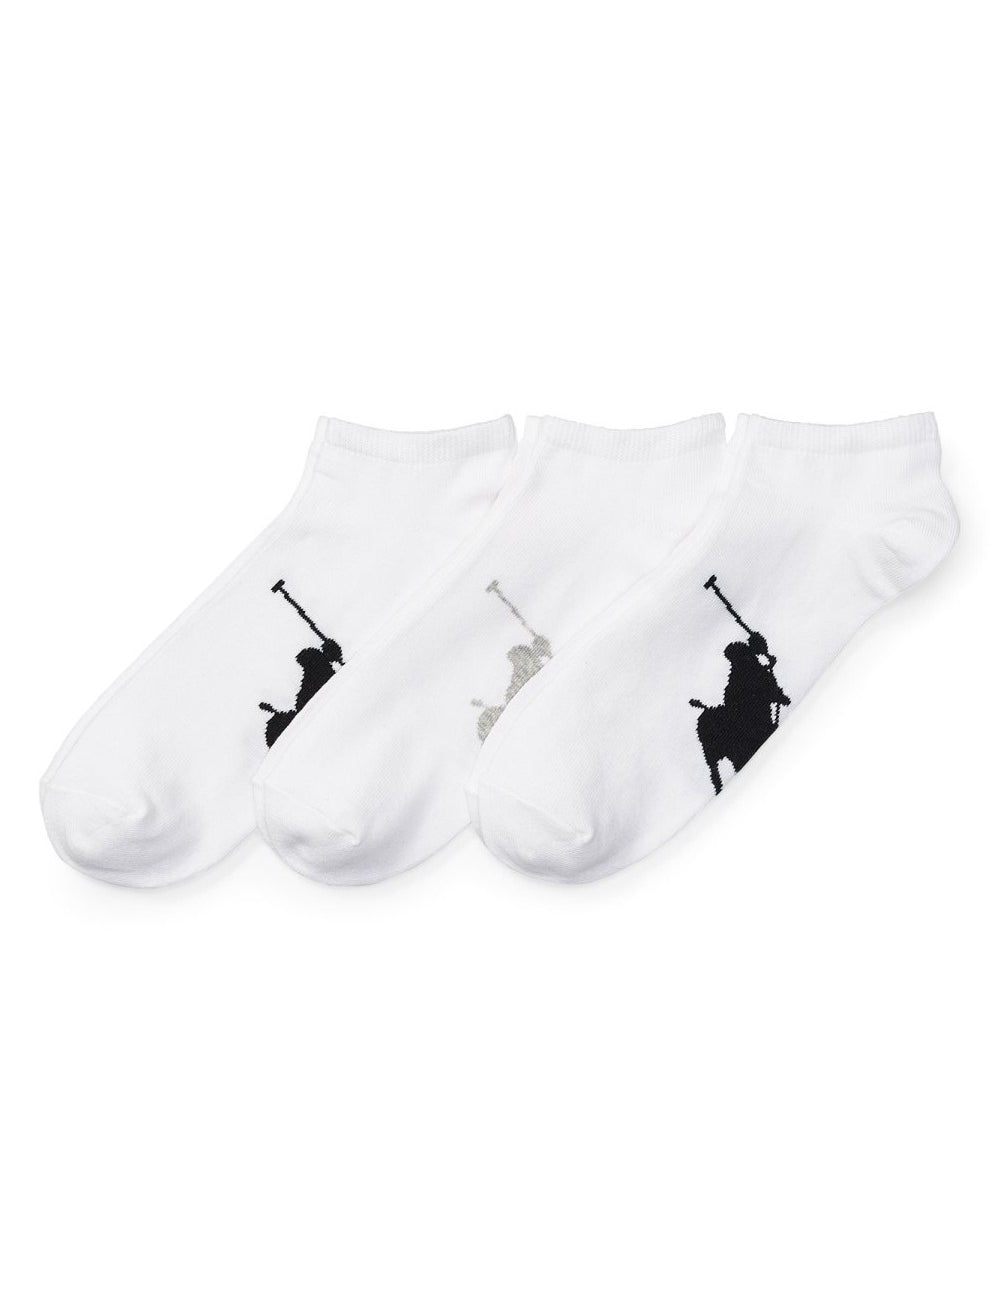 bpp-sole-3-pack-socks.jpg